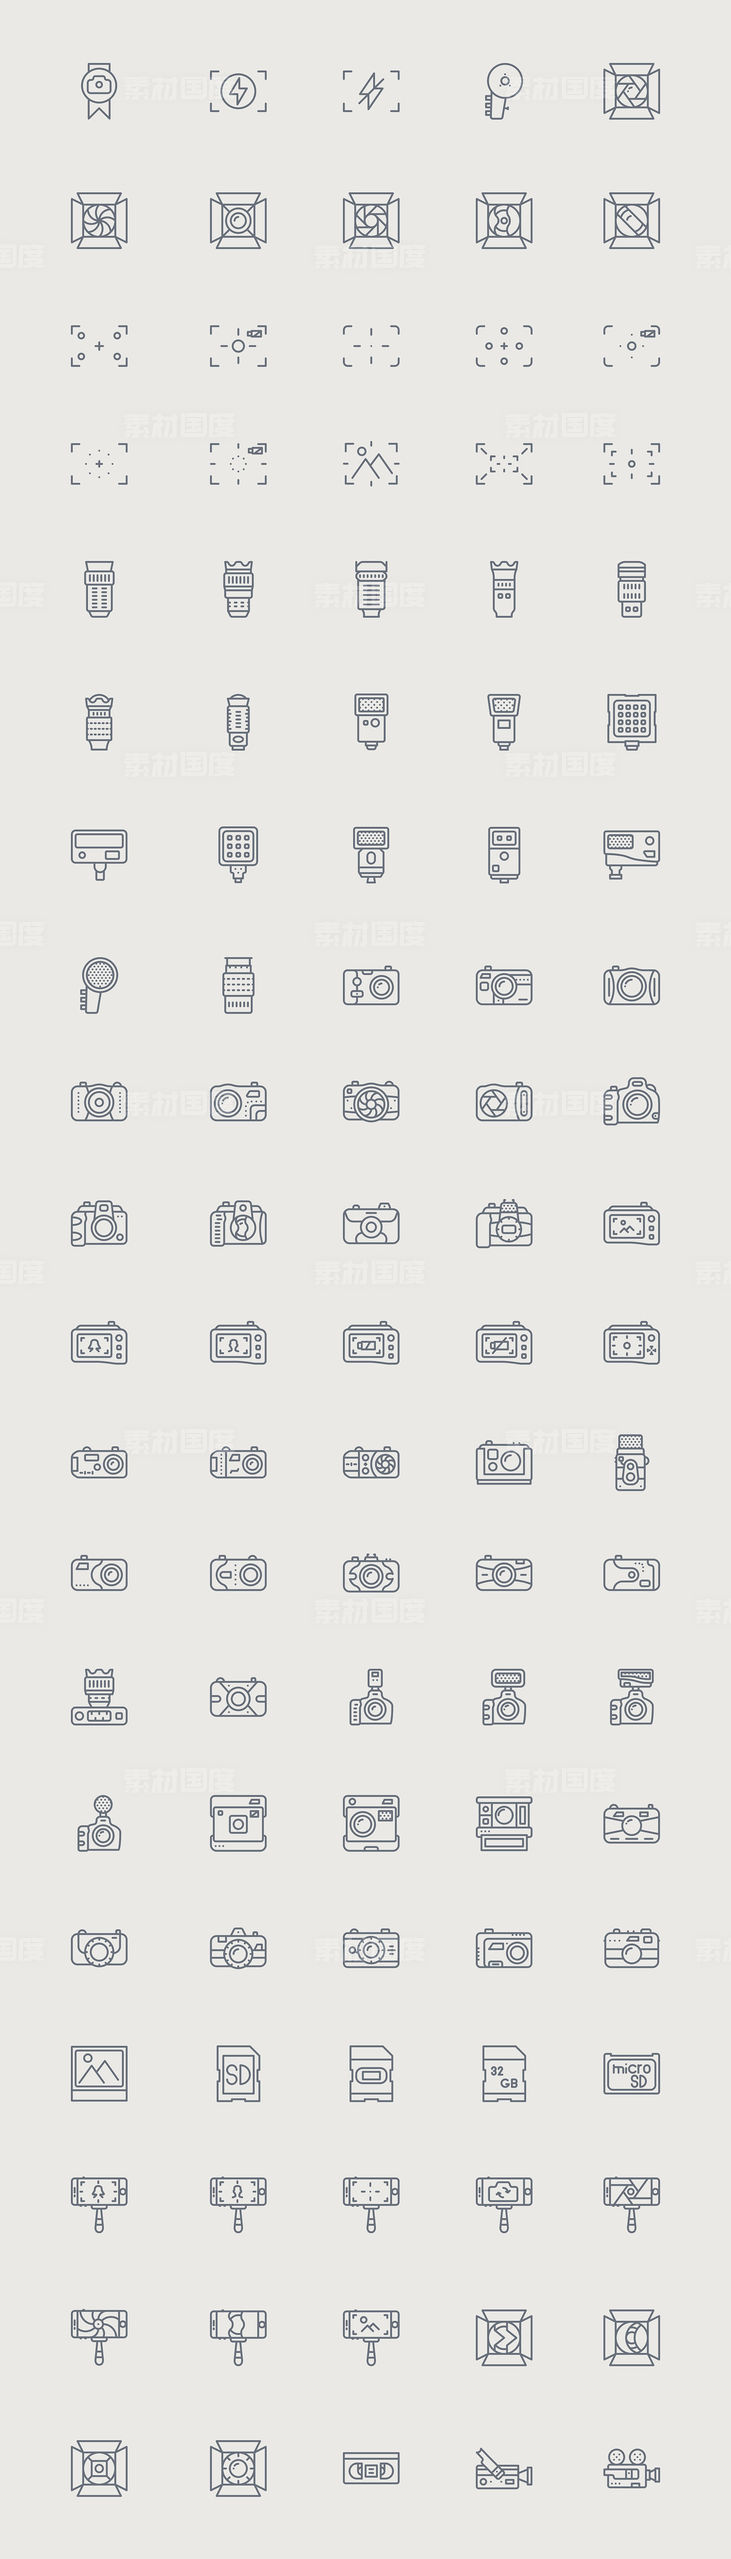 100个摄影设备图标 .sketch素材下载